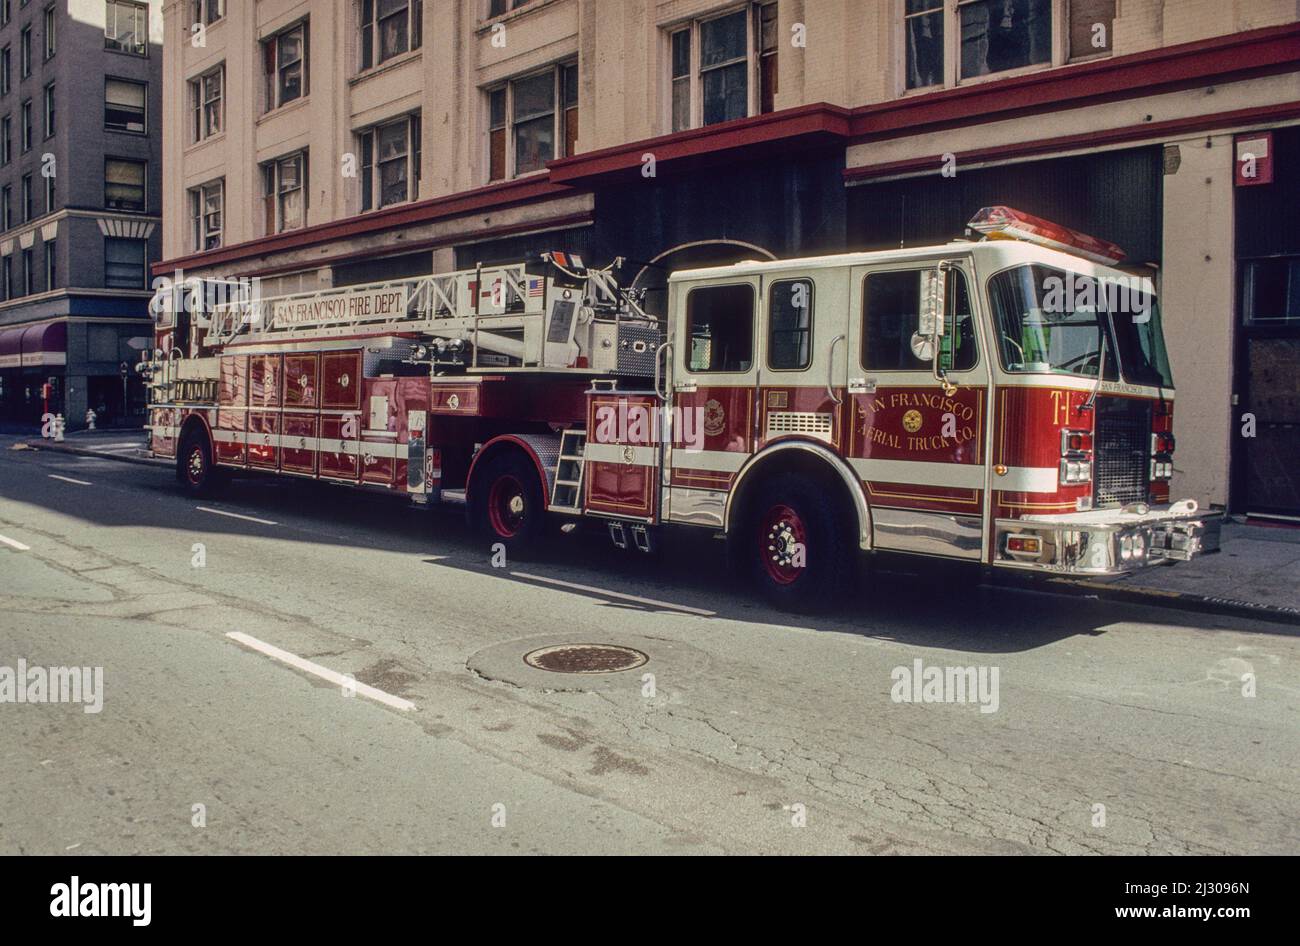 Der Drehleiterwagen Nr. 1 der Feuerwehr von San Francisco geparkt im Stadtzentrum. - Fire Truck No. 1 of the San Francisco Fire Department, a tiller truck, parked in downtown S.F. Stock Photo